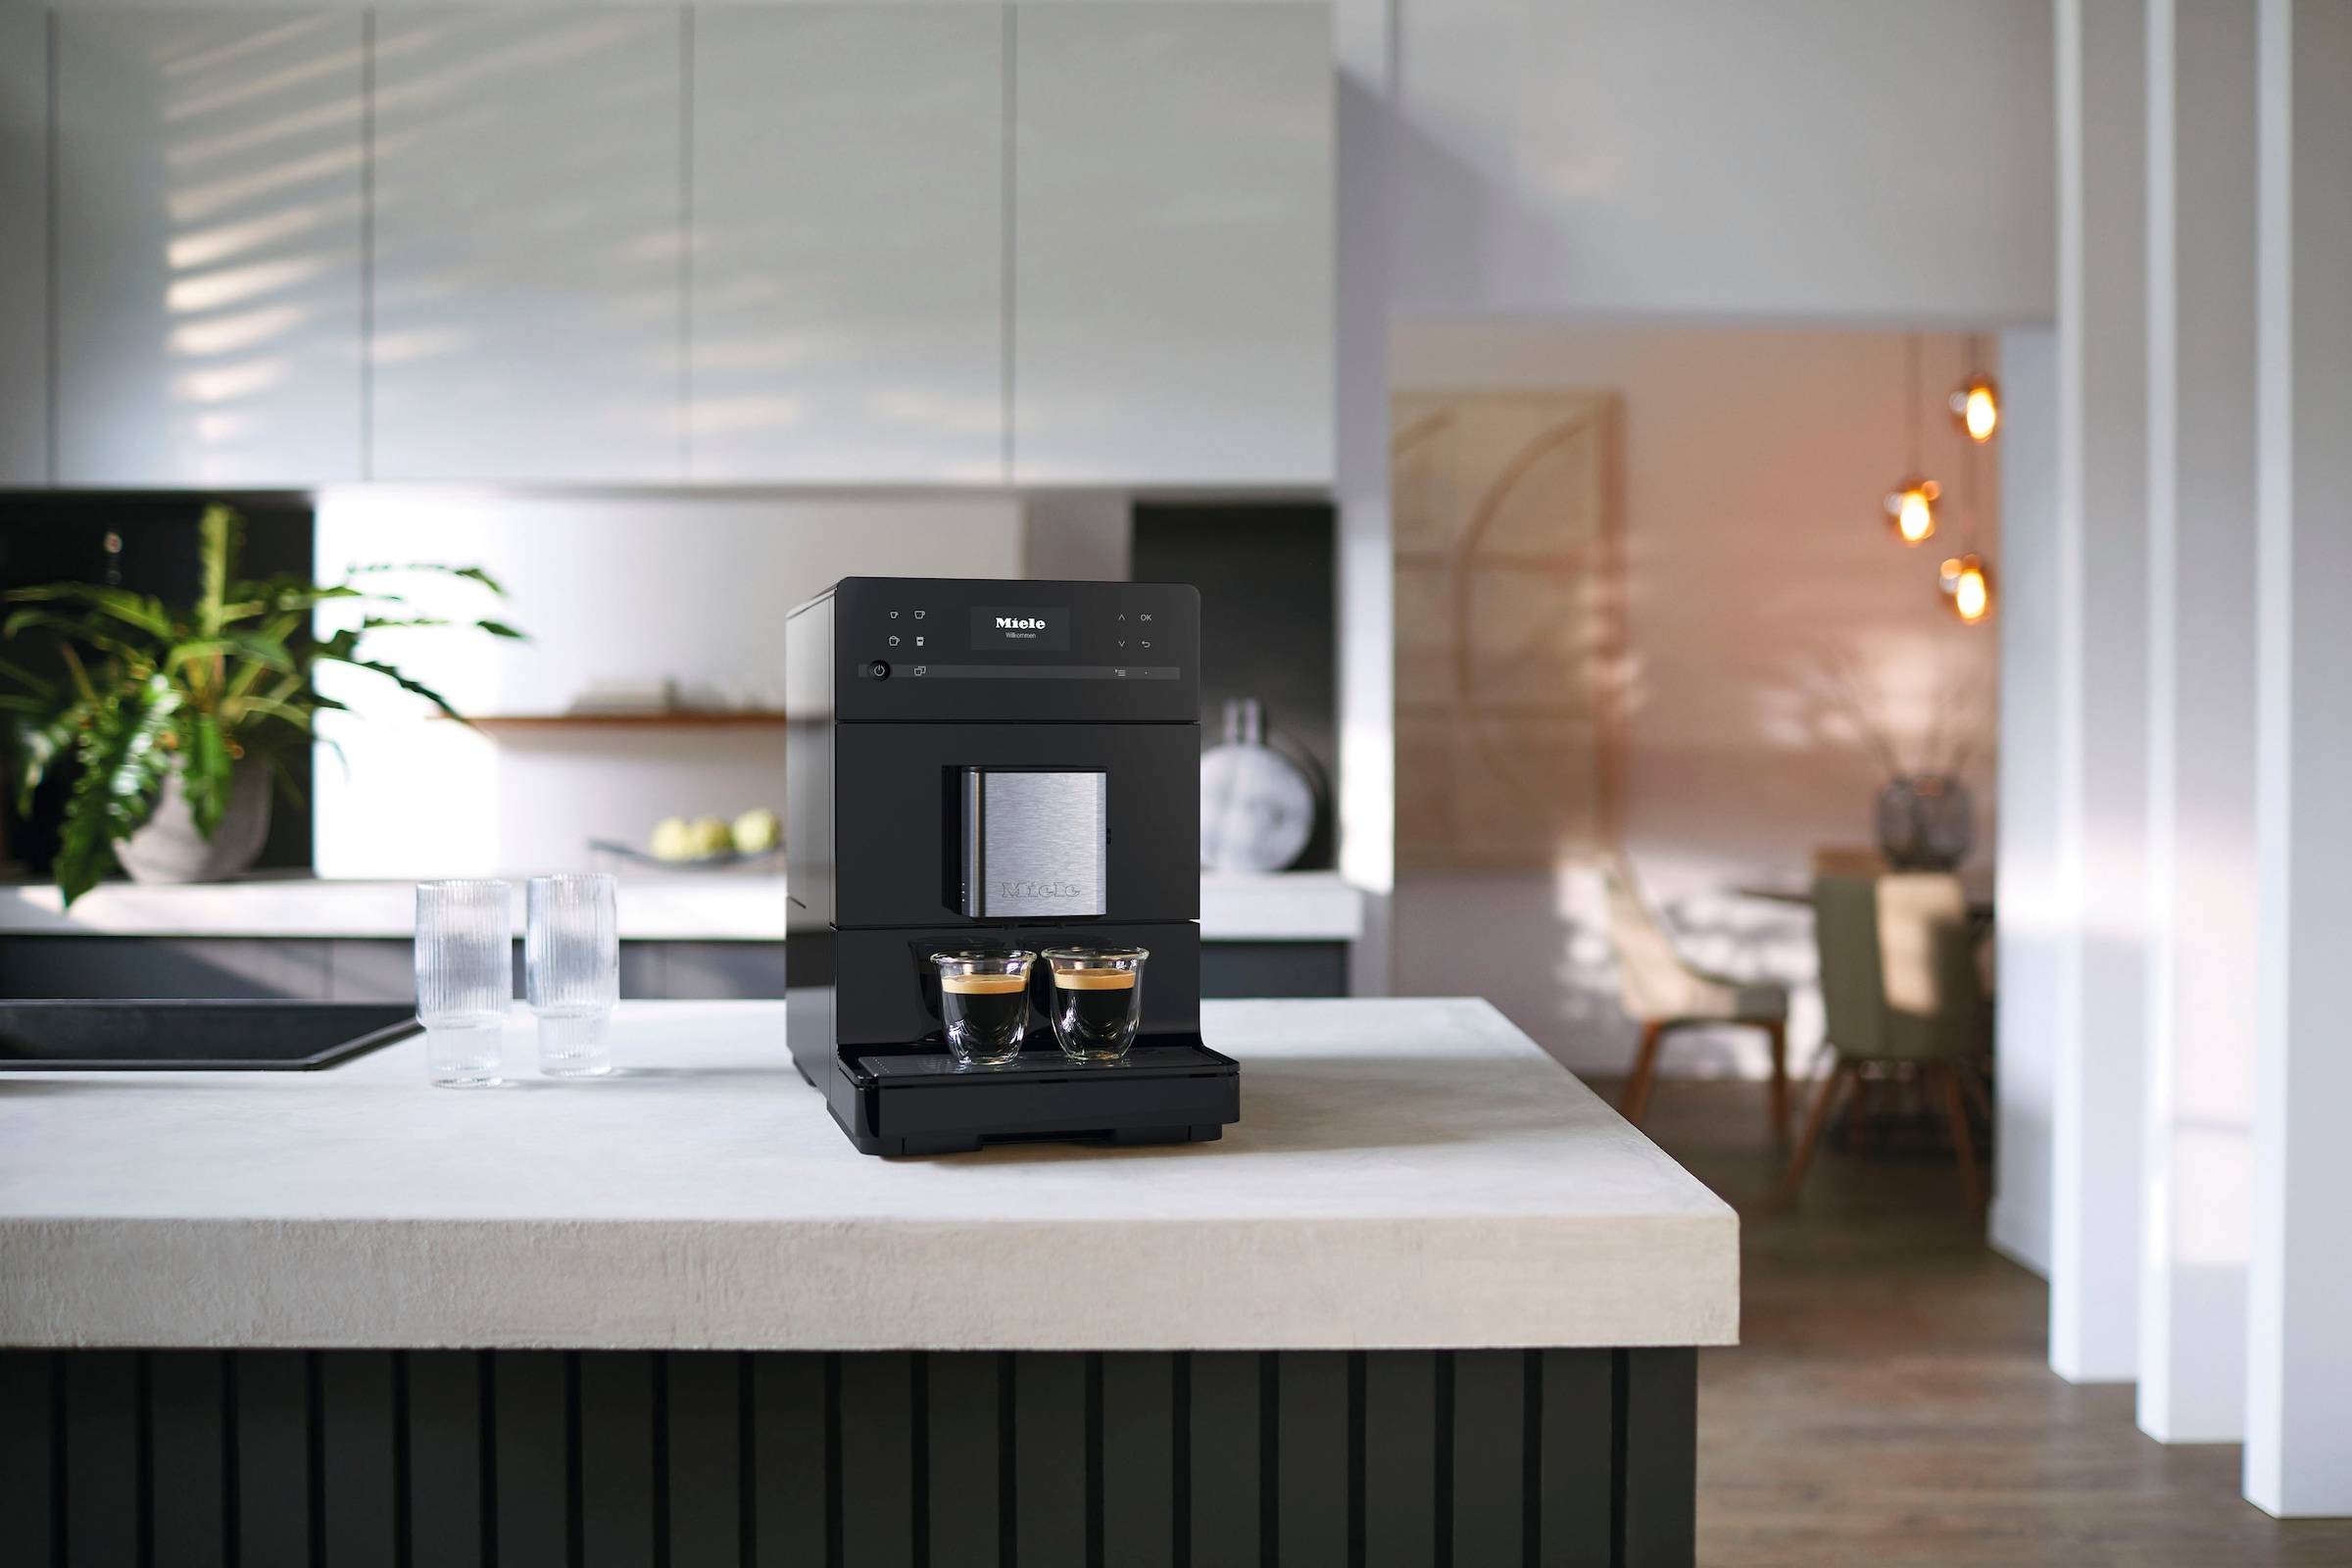 Miele Kaffeevollautomat »CM 5300«, Kaffeekannenfunktion